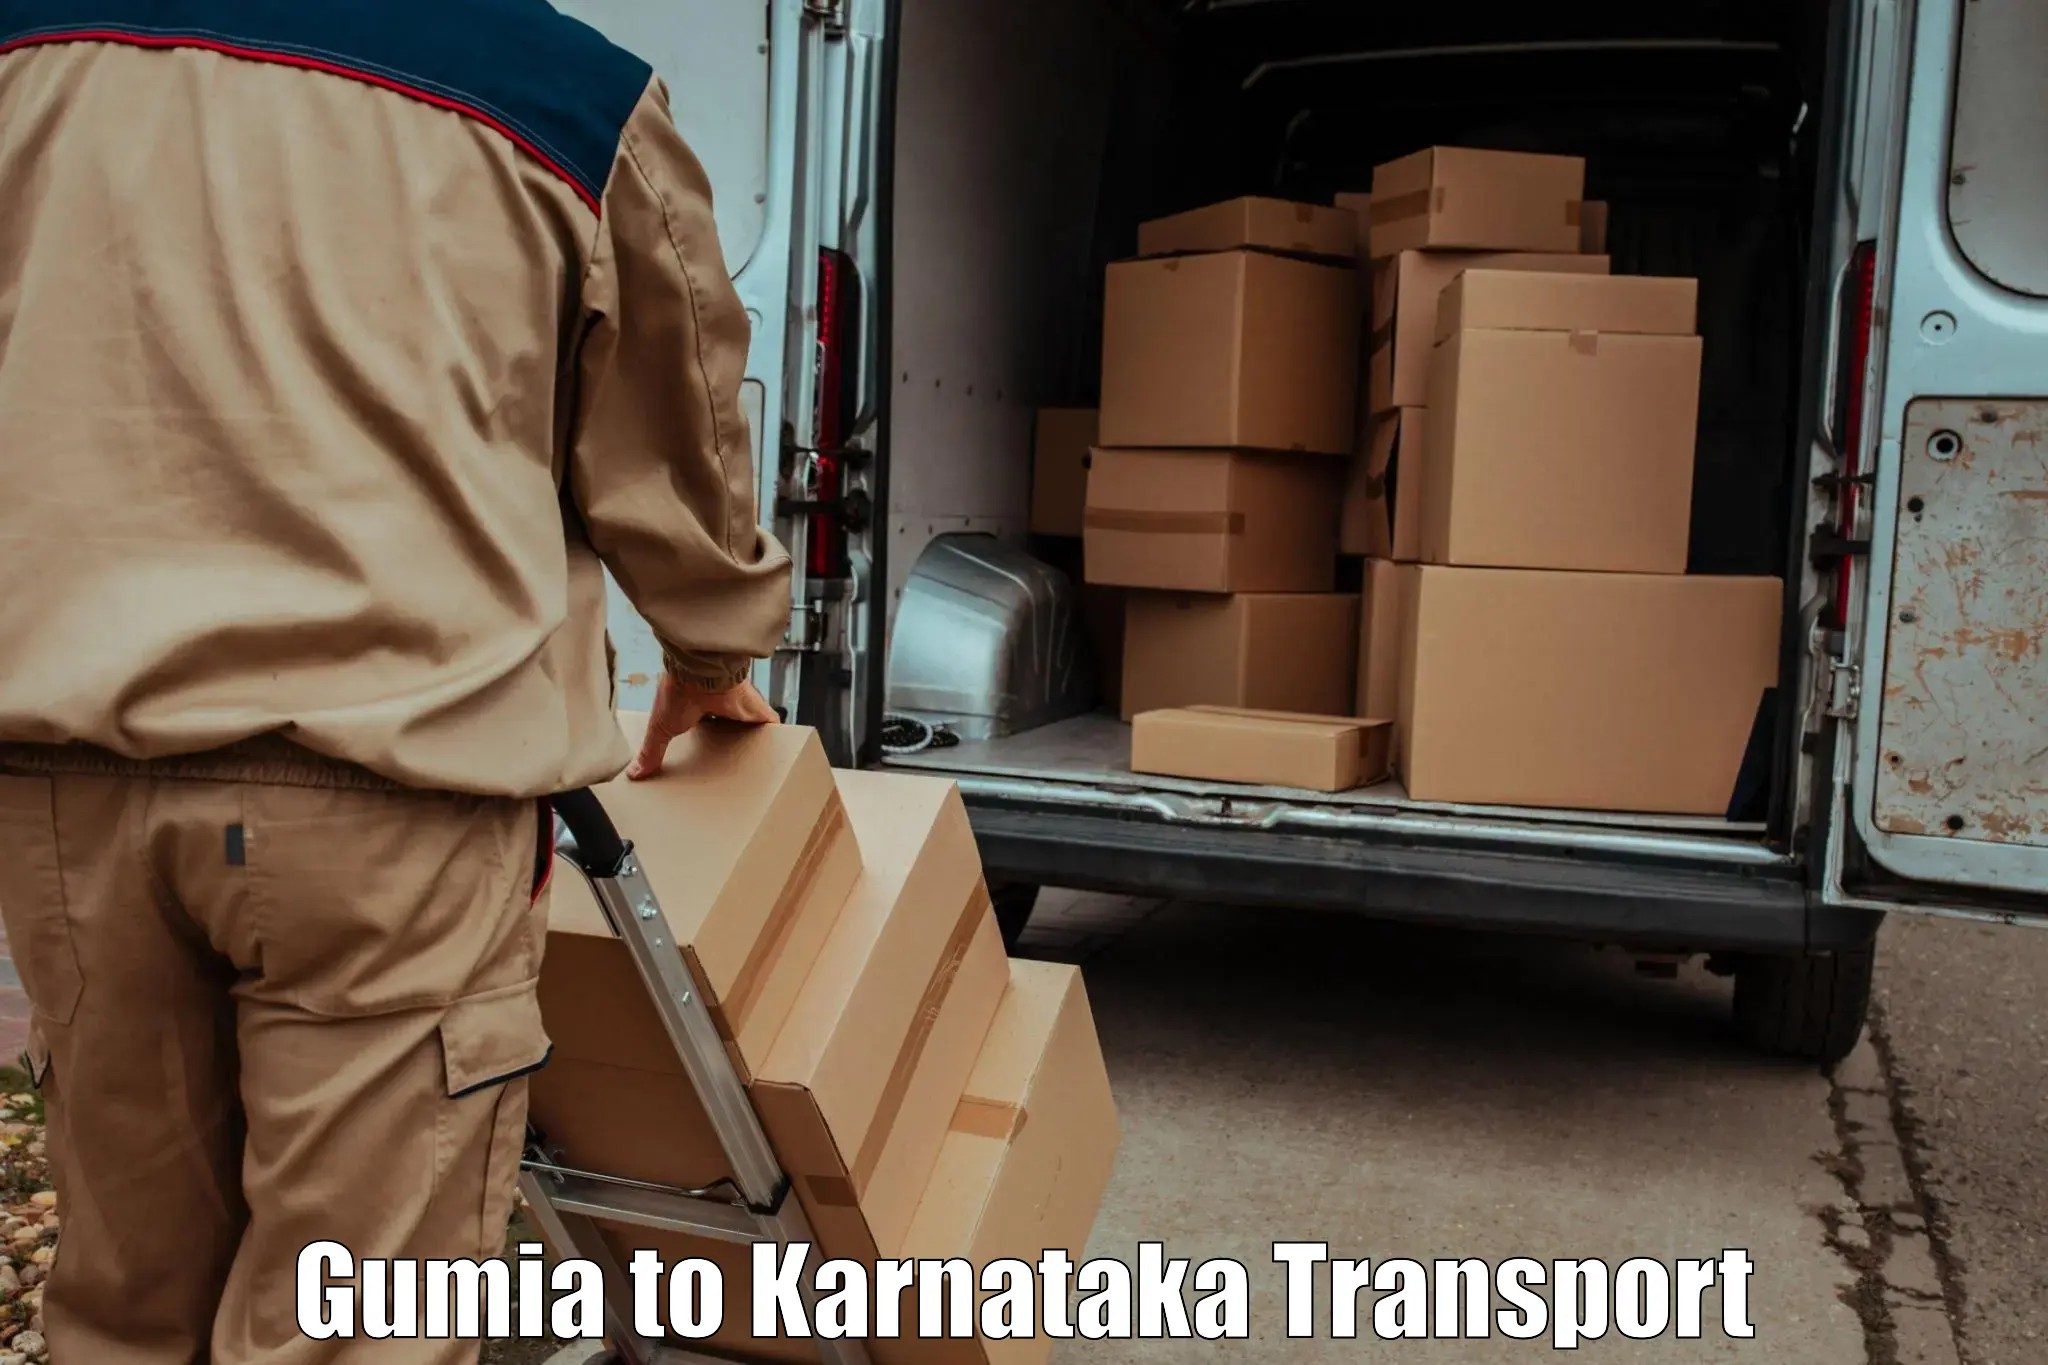 Luggage transport services Gumia to Basavakalyan